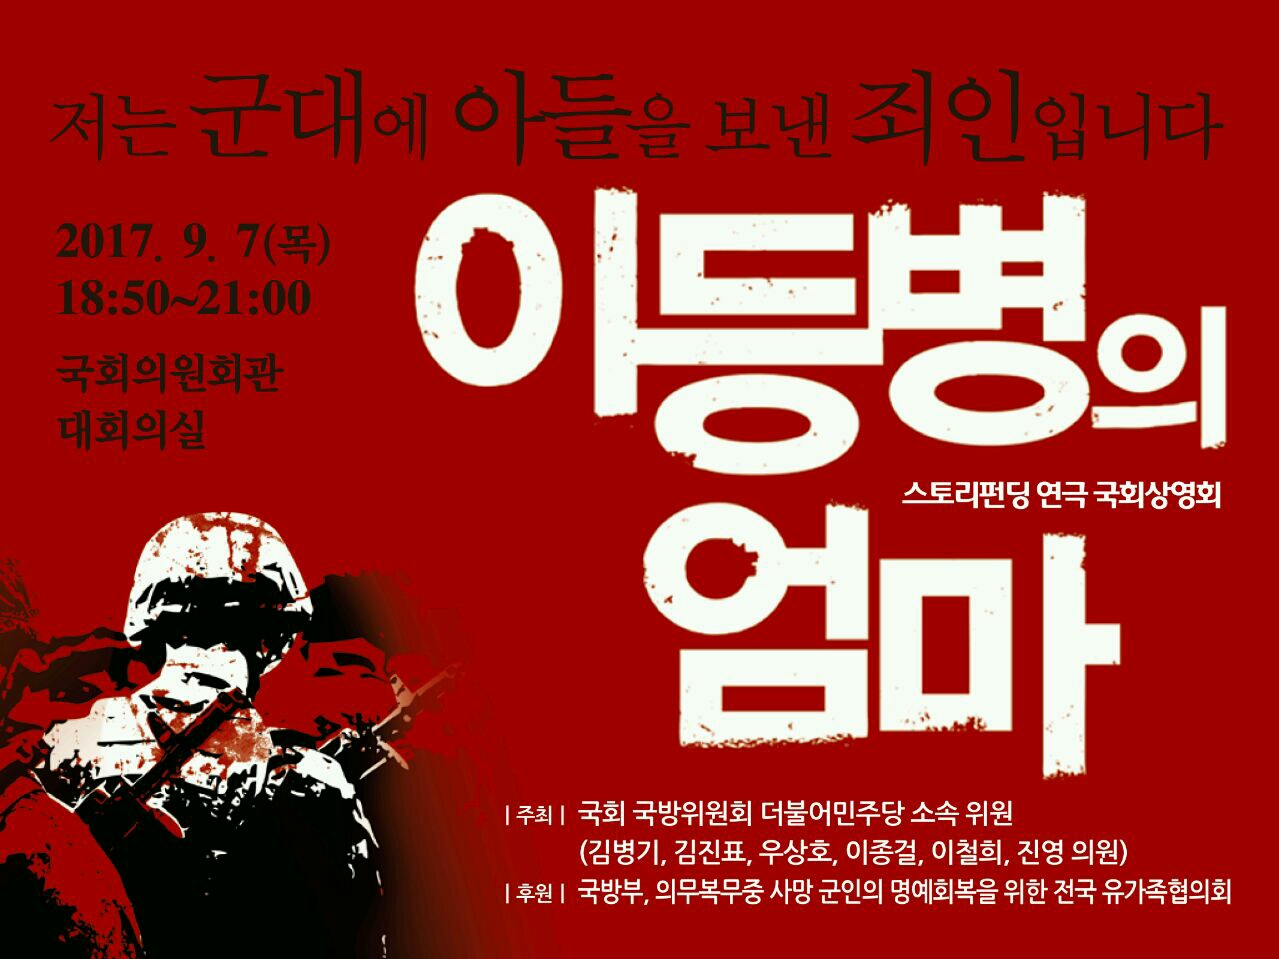 지난 9월 7일 국회 이철희 의원실 등에서 공동주최로 열린 연극 <이등병의 엄마> 영상 상영회 포스터.